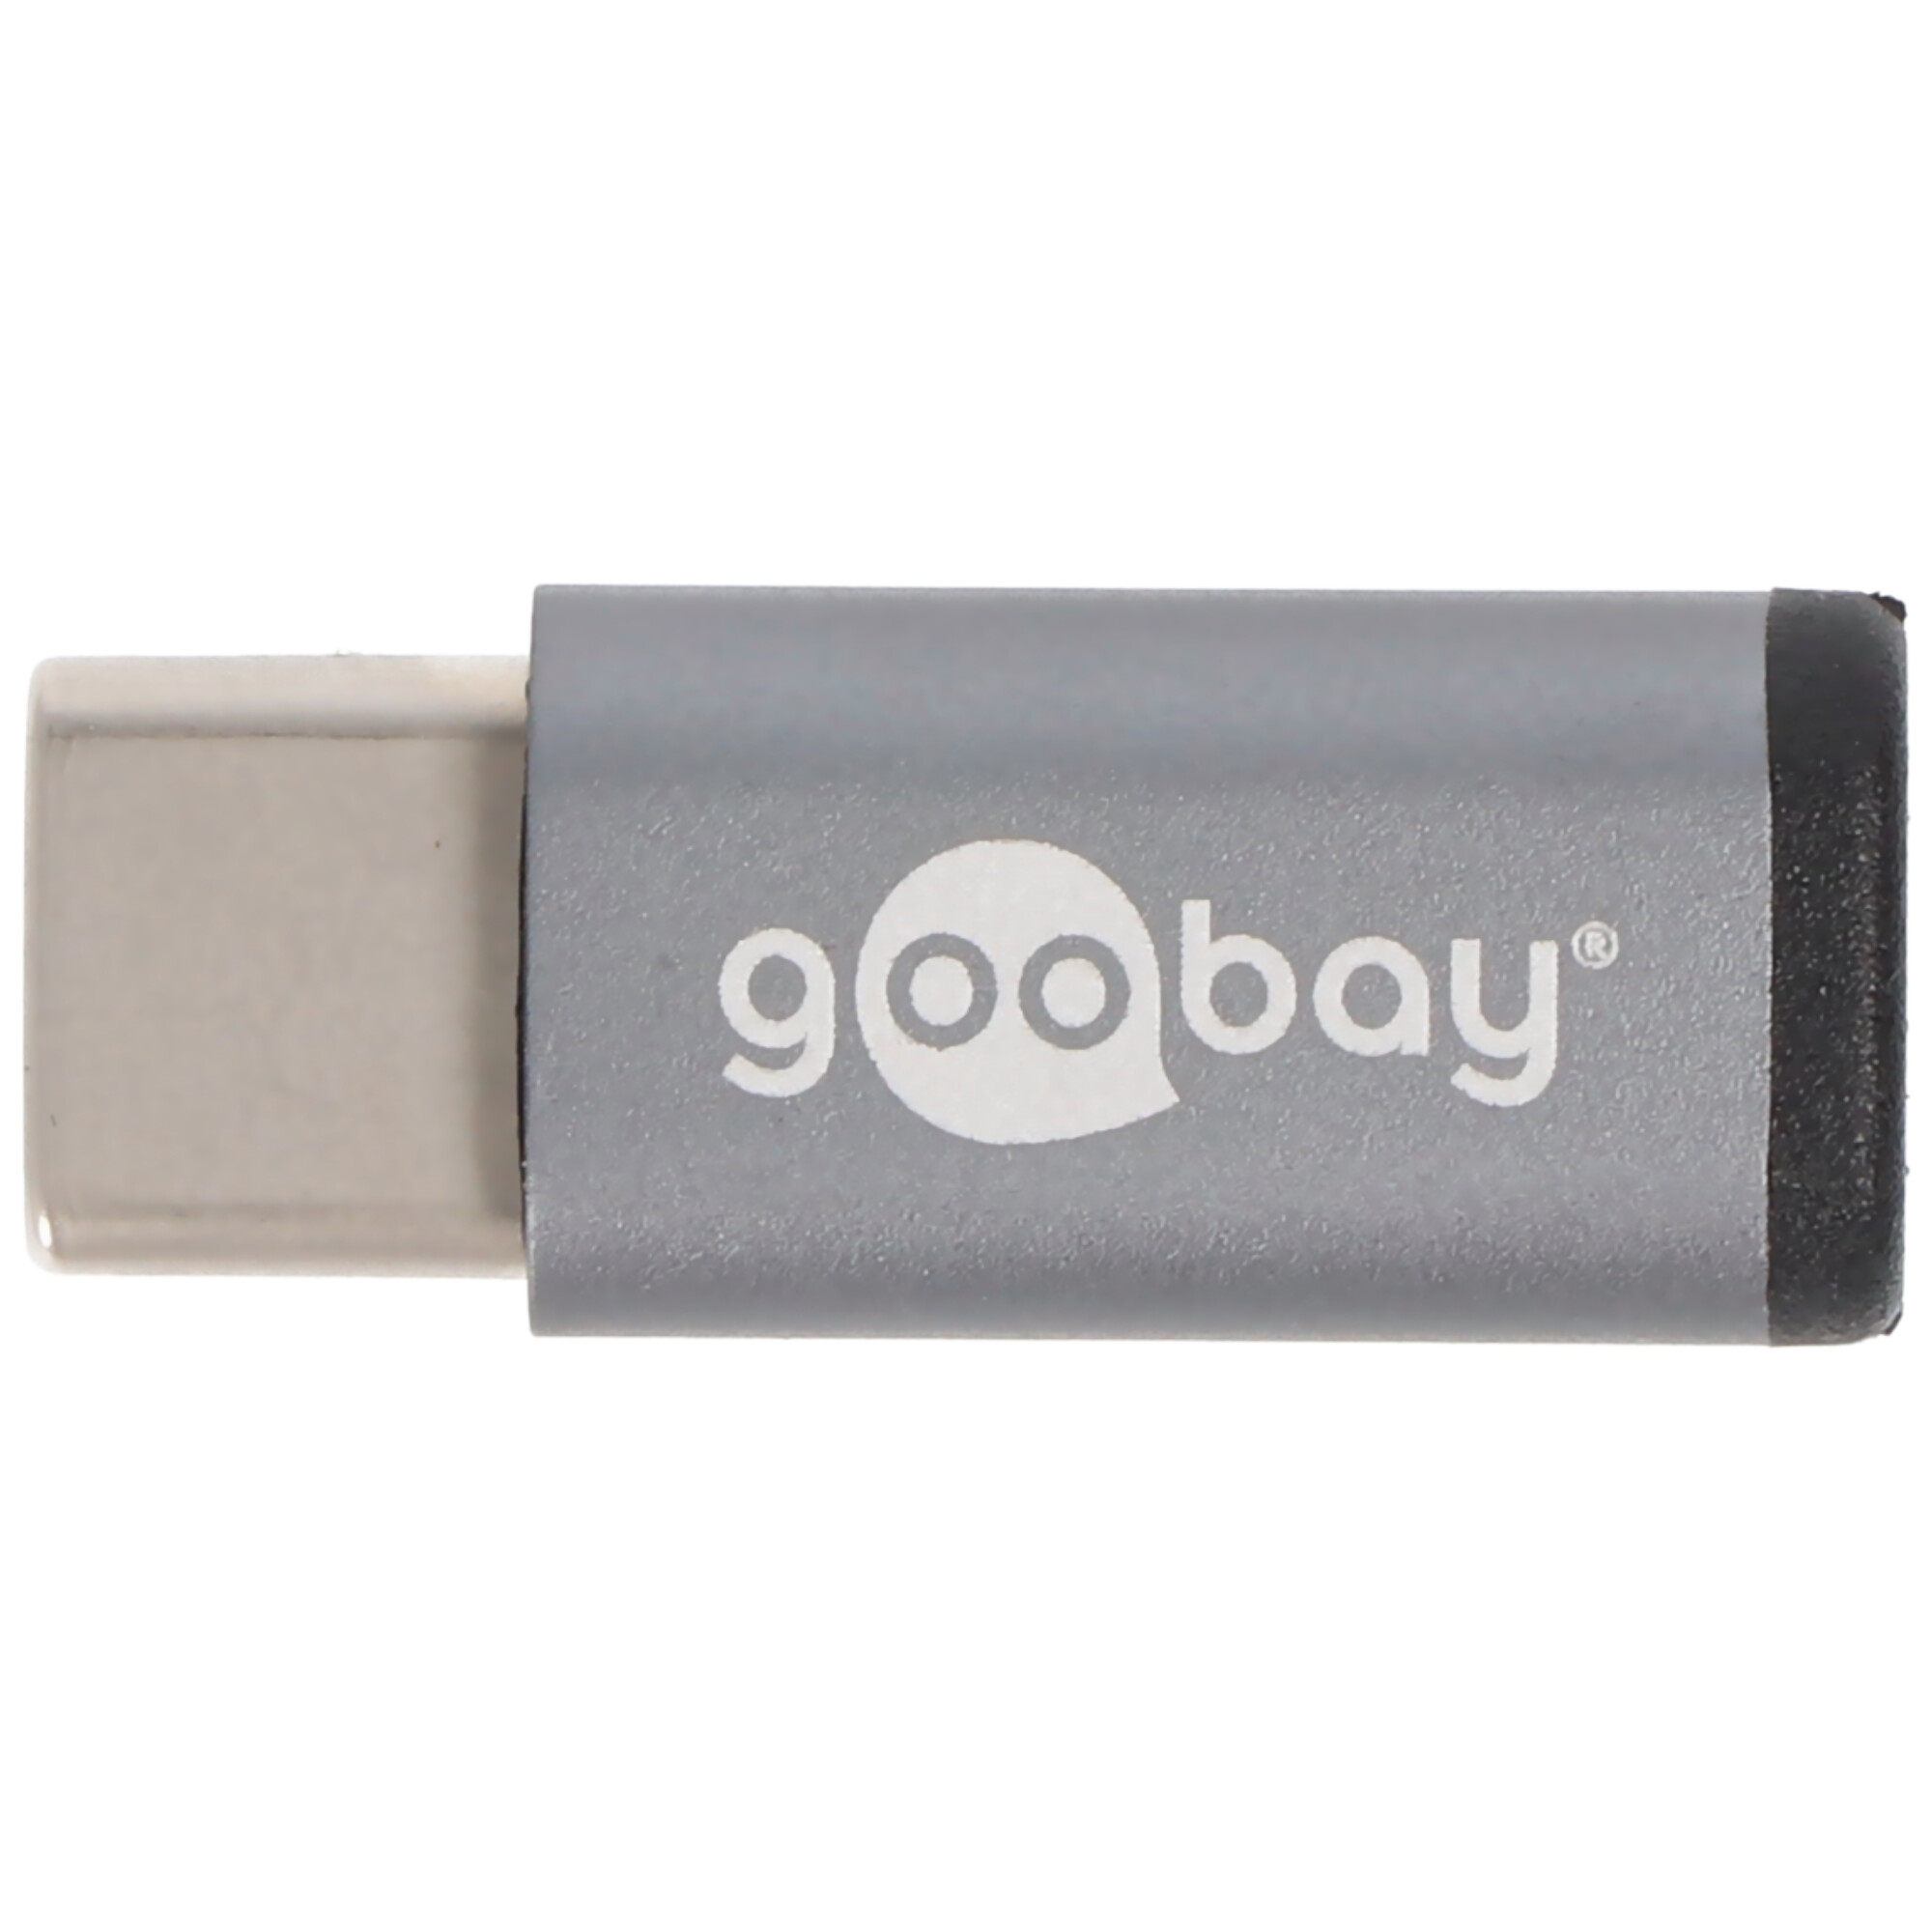 USB-C Adapter zum Verbinden eines USB-C Gerätes mit dem älteren USB 2.0 Micro-B Kabel bzw. Stecker